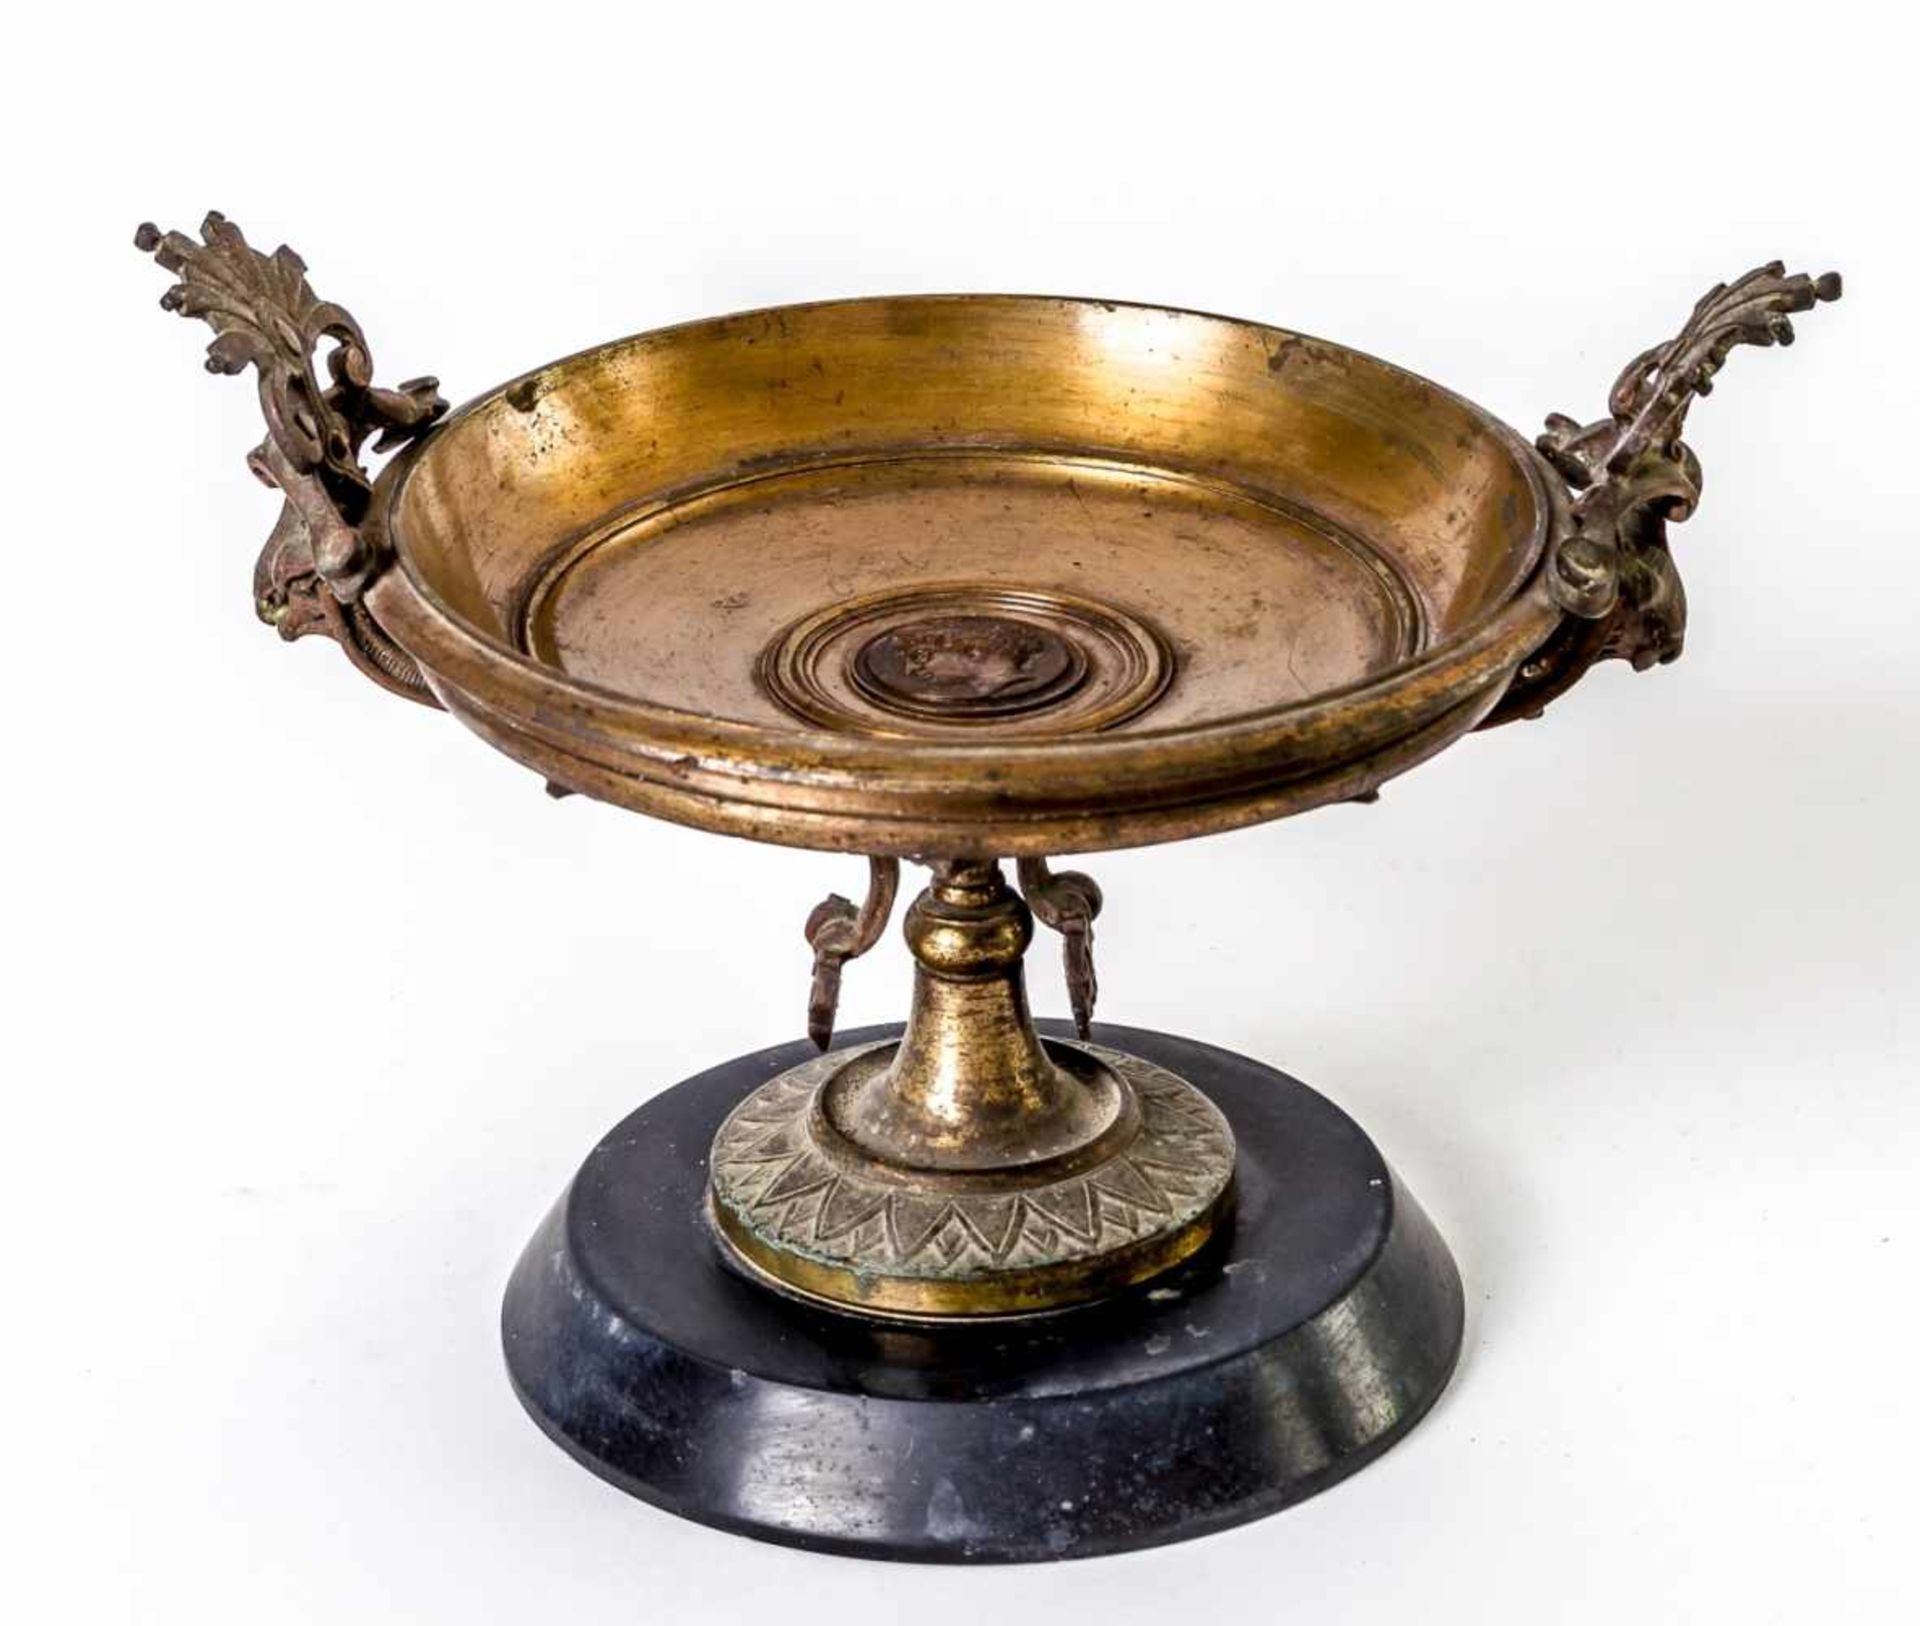 An impressive bowl, Brass (2455g), c. 1900, H.: 13,5 cm (without handles), D: 18,3 cm,Provenance: